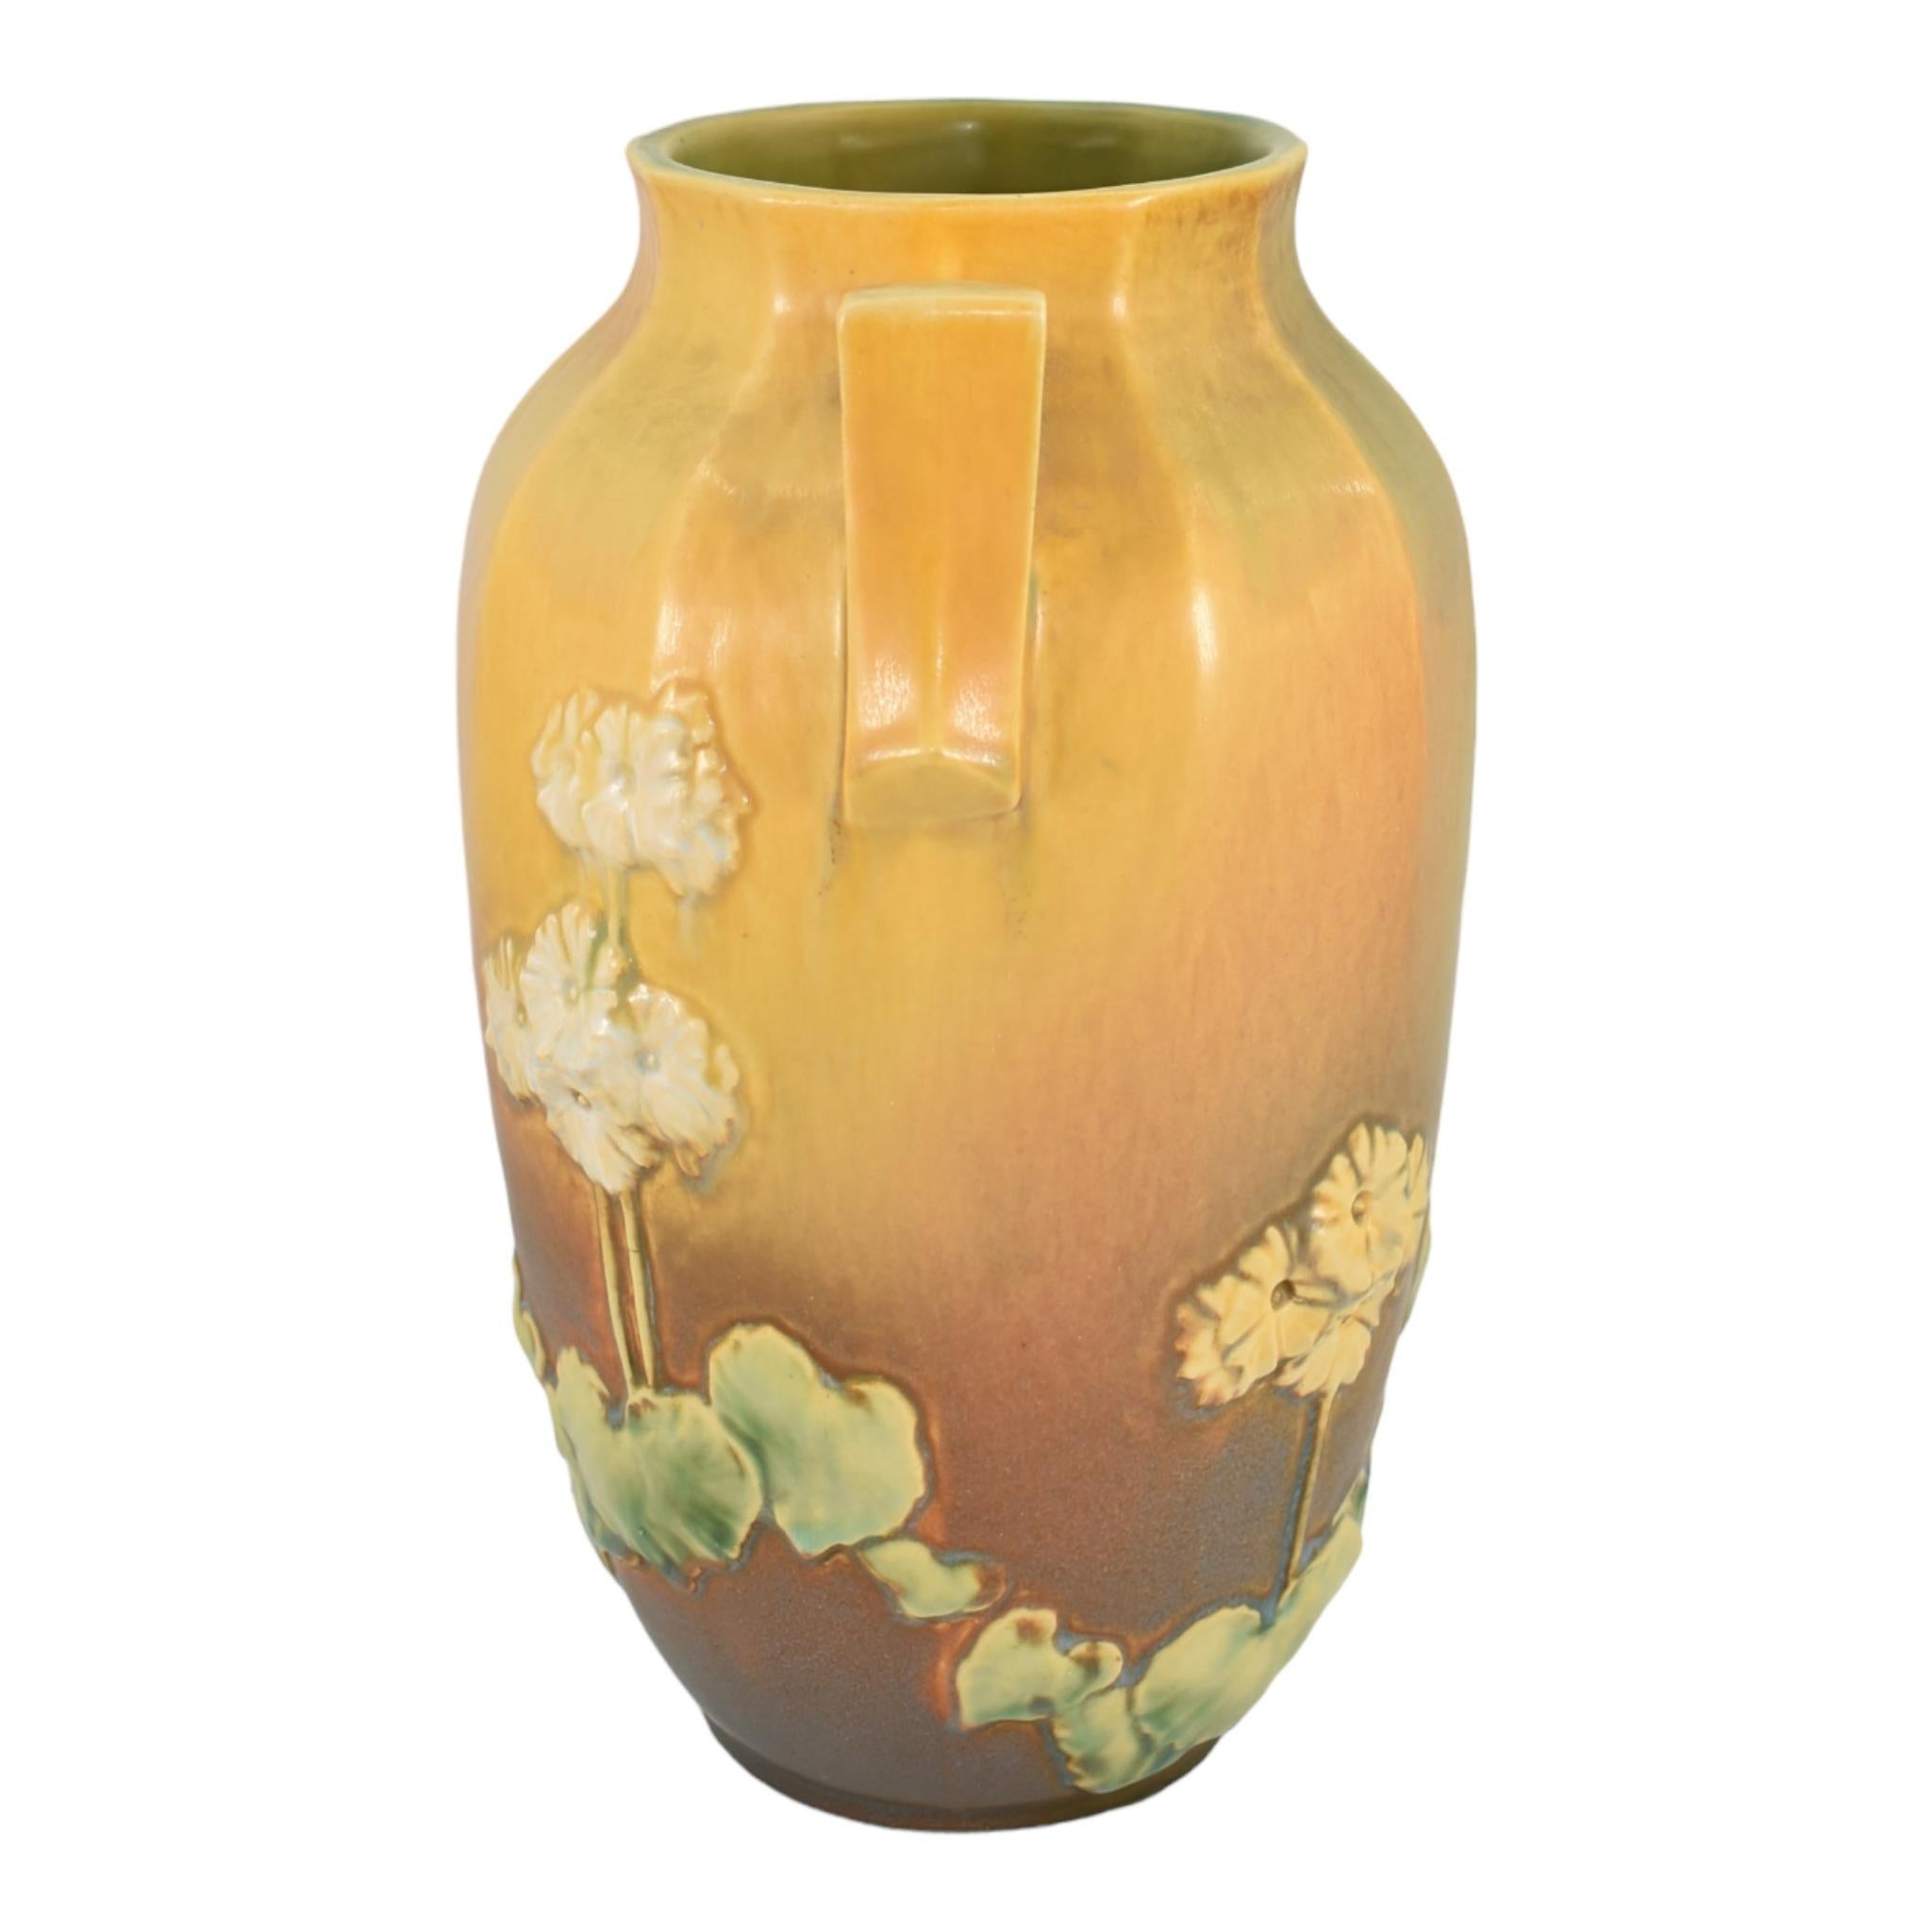 Art Deco Roseville Primrose Experimental Trial Glaze 1936 Vintage Pottery Ceramic Vase For Sale